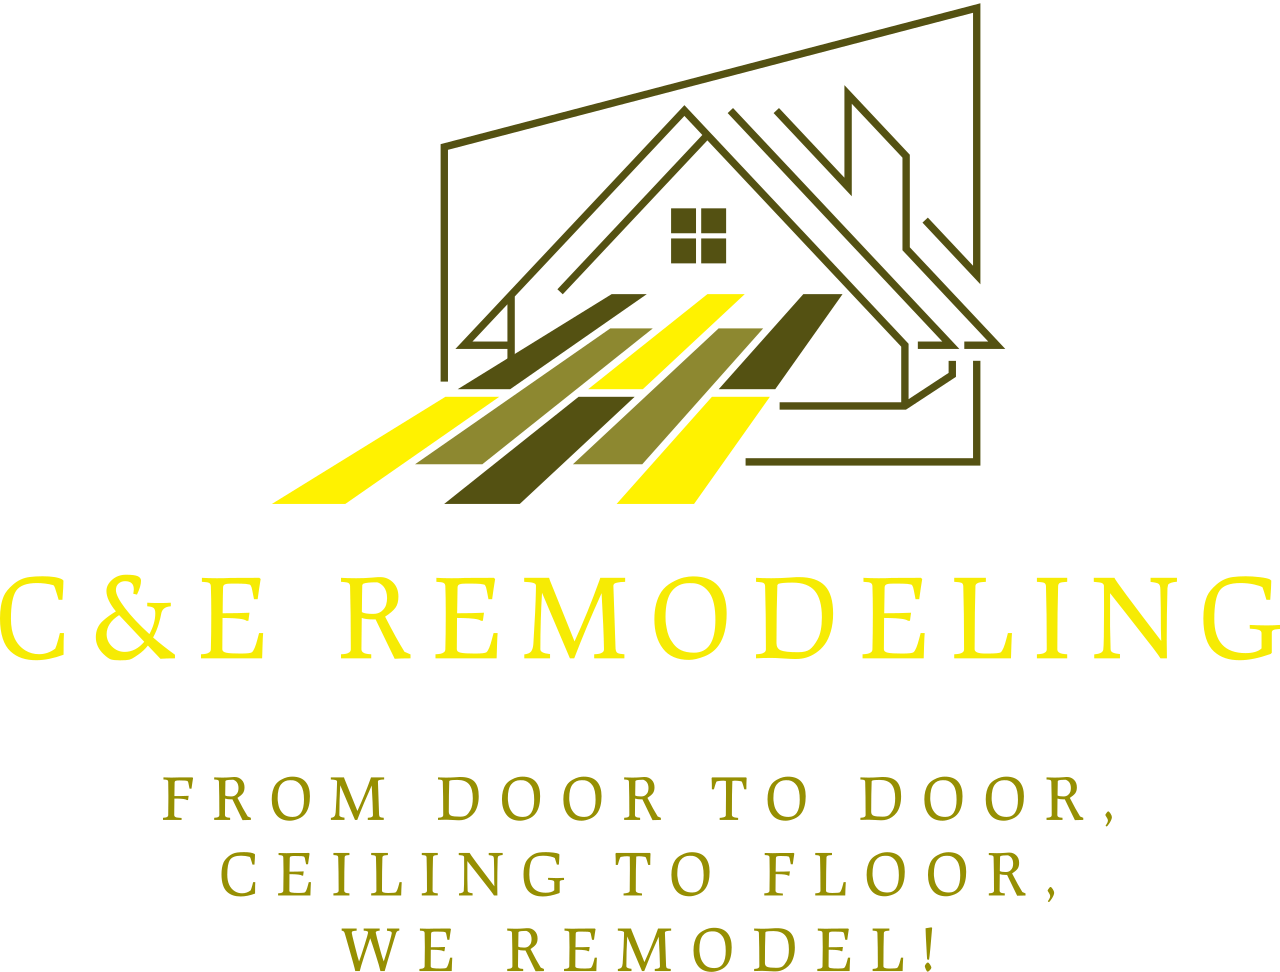 C&E Remodeling's logo